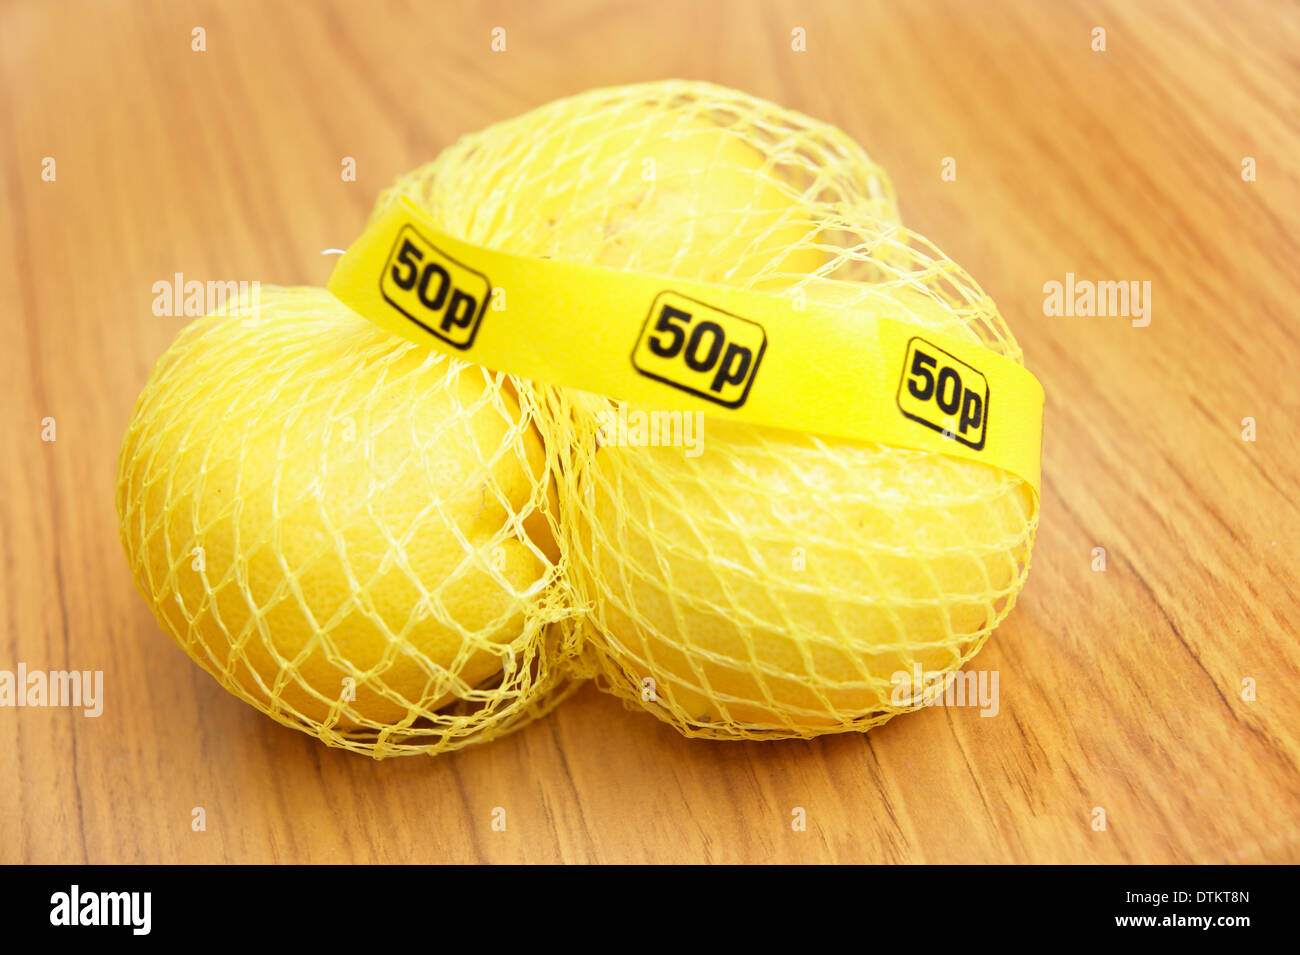 Netzbeutel Zitronen für 50p für medizinische Zwecke Kochen verwendet & kann zur Reinigung Kalkablagerungen auf Edelstahl Armaturen etc. verwendet werden Stockfoto